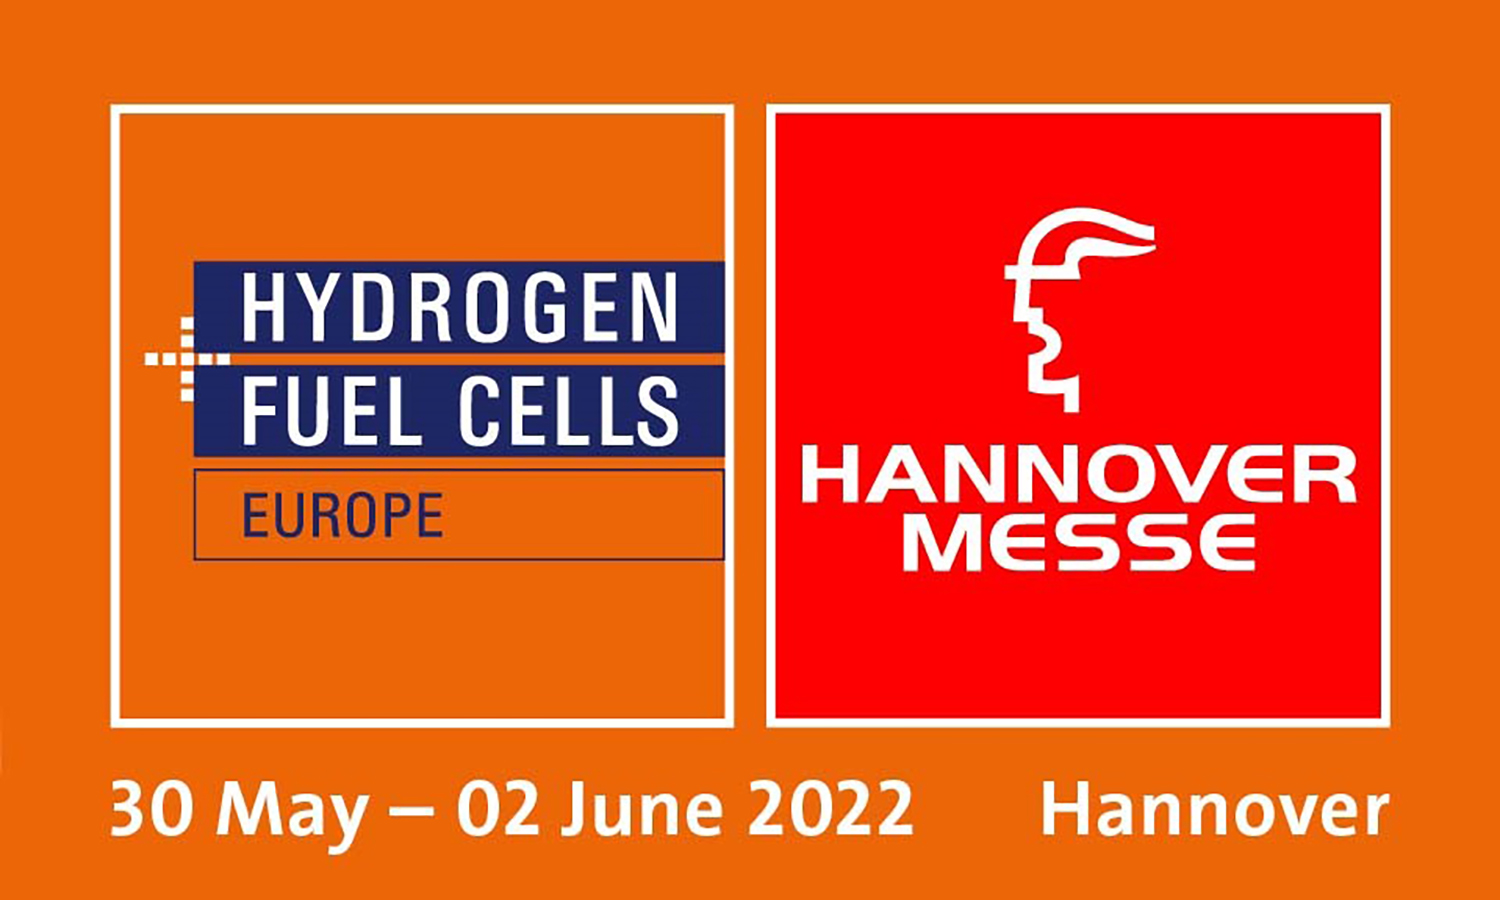 汉诺威工业博览会 氢气+燃料电池